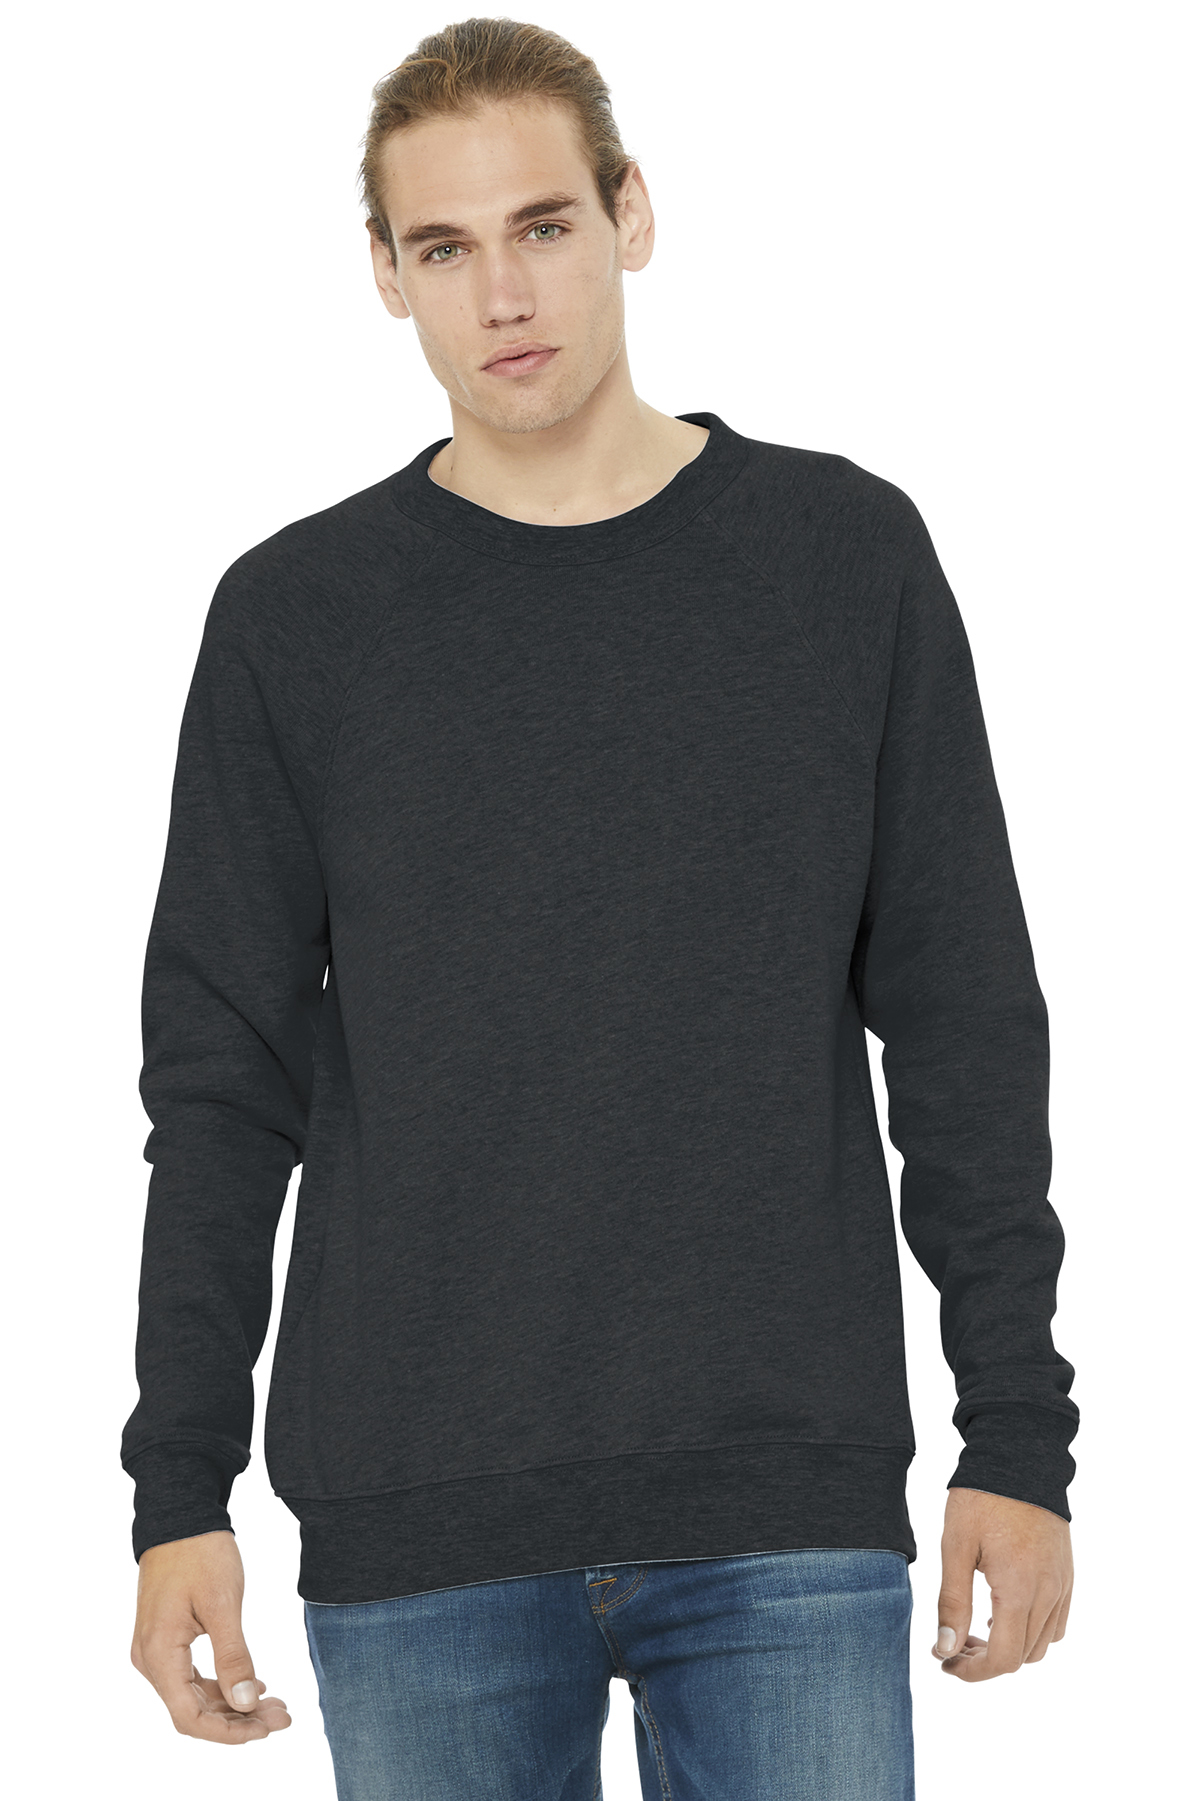 BELLA+CANVAS Unisex Sponge Fleece Raglan Sweatshirt | Product | Company ...